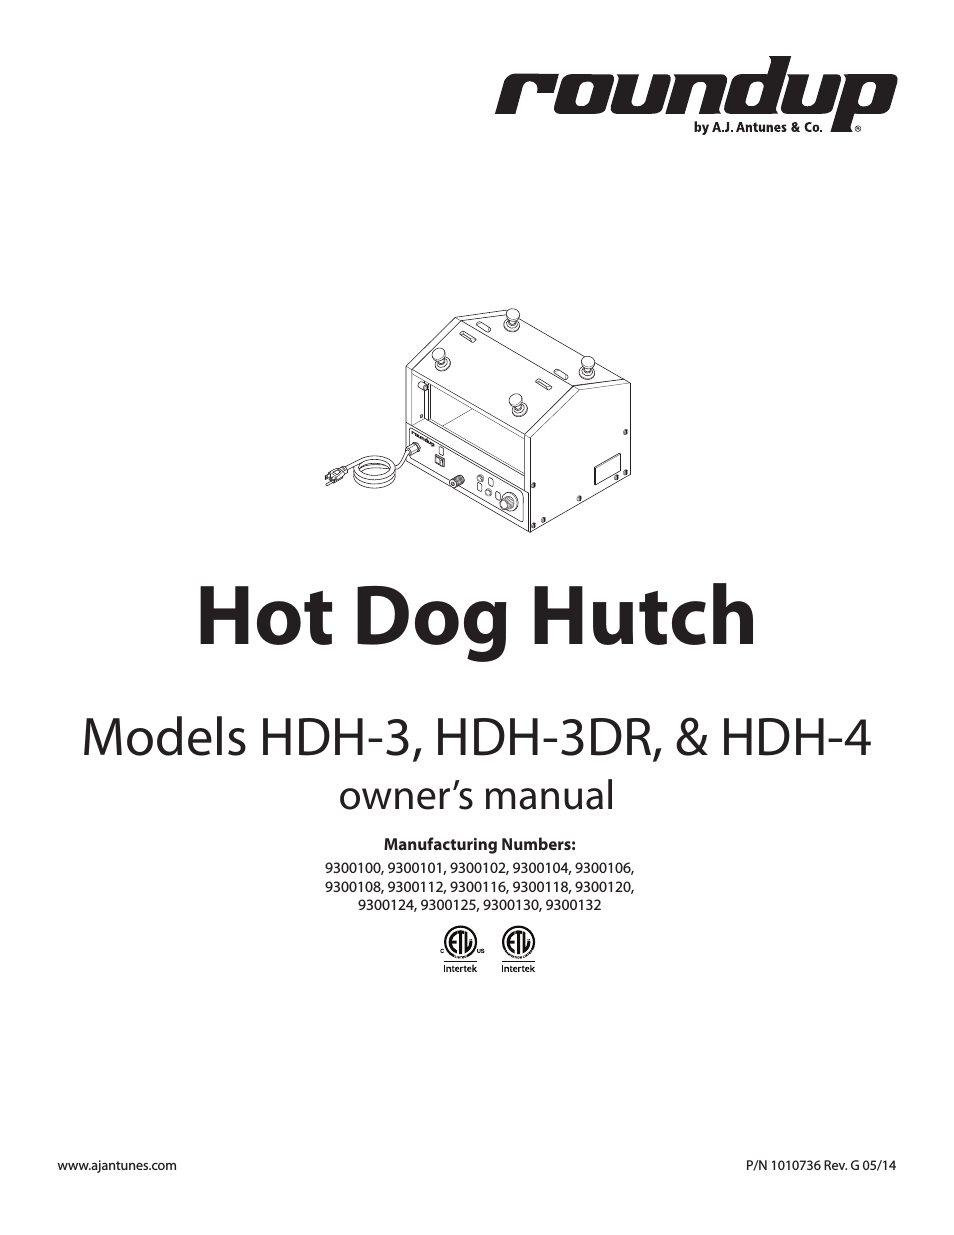 HDH-3 9300118